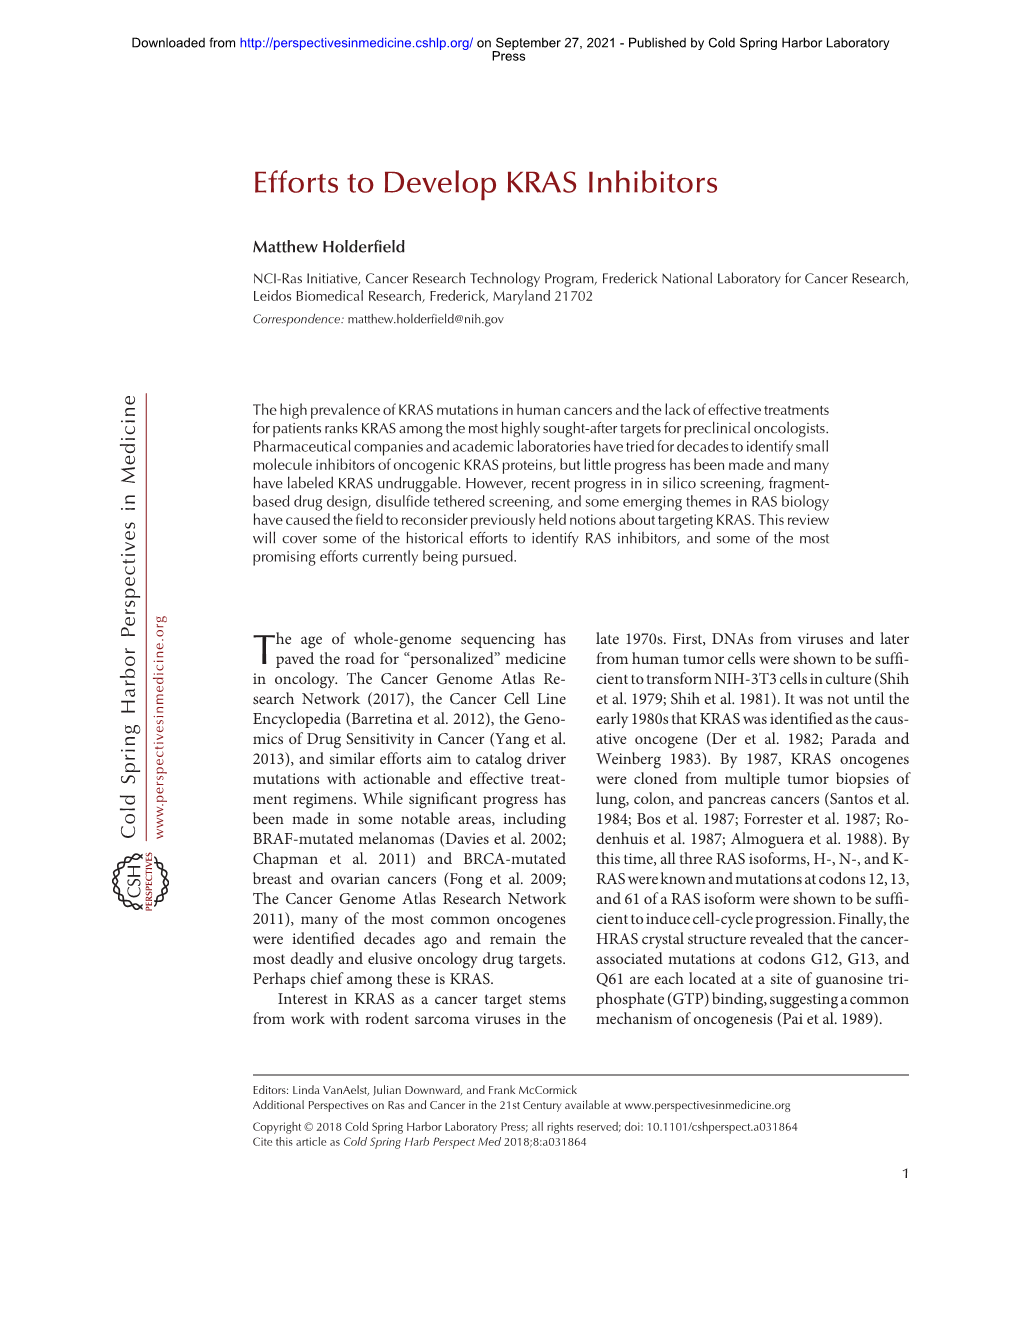 Efforts to Develop KRAS Inhibitors